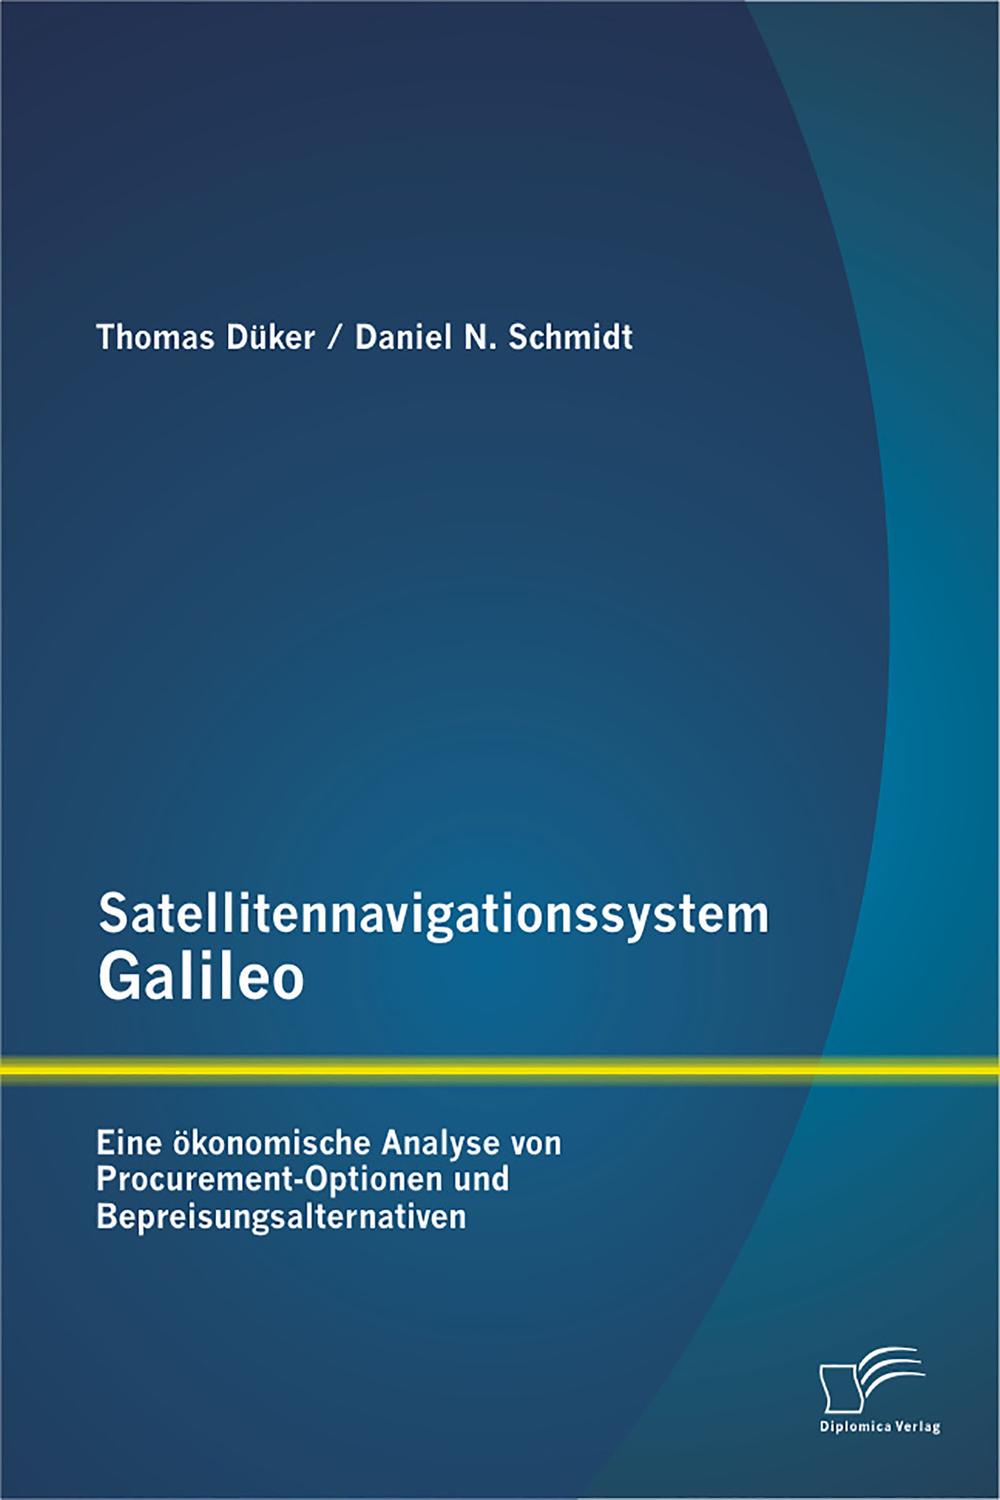 Satellitennavigationssystem Galileo: Eine ökonomische Analyse von Procurement-Optionen und Bepreisungsalternativen - Daniel N. Schmidt, Thomas Düker